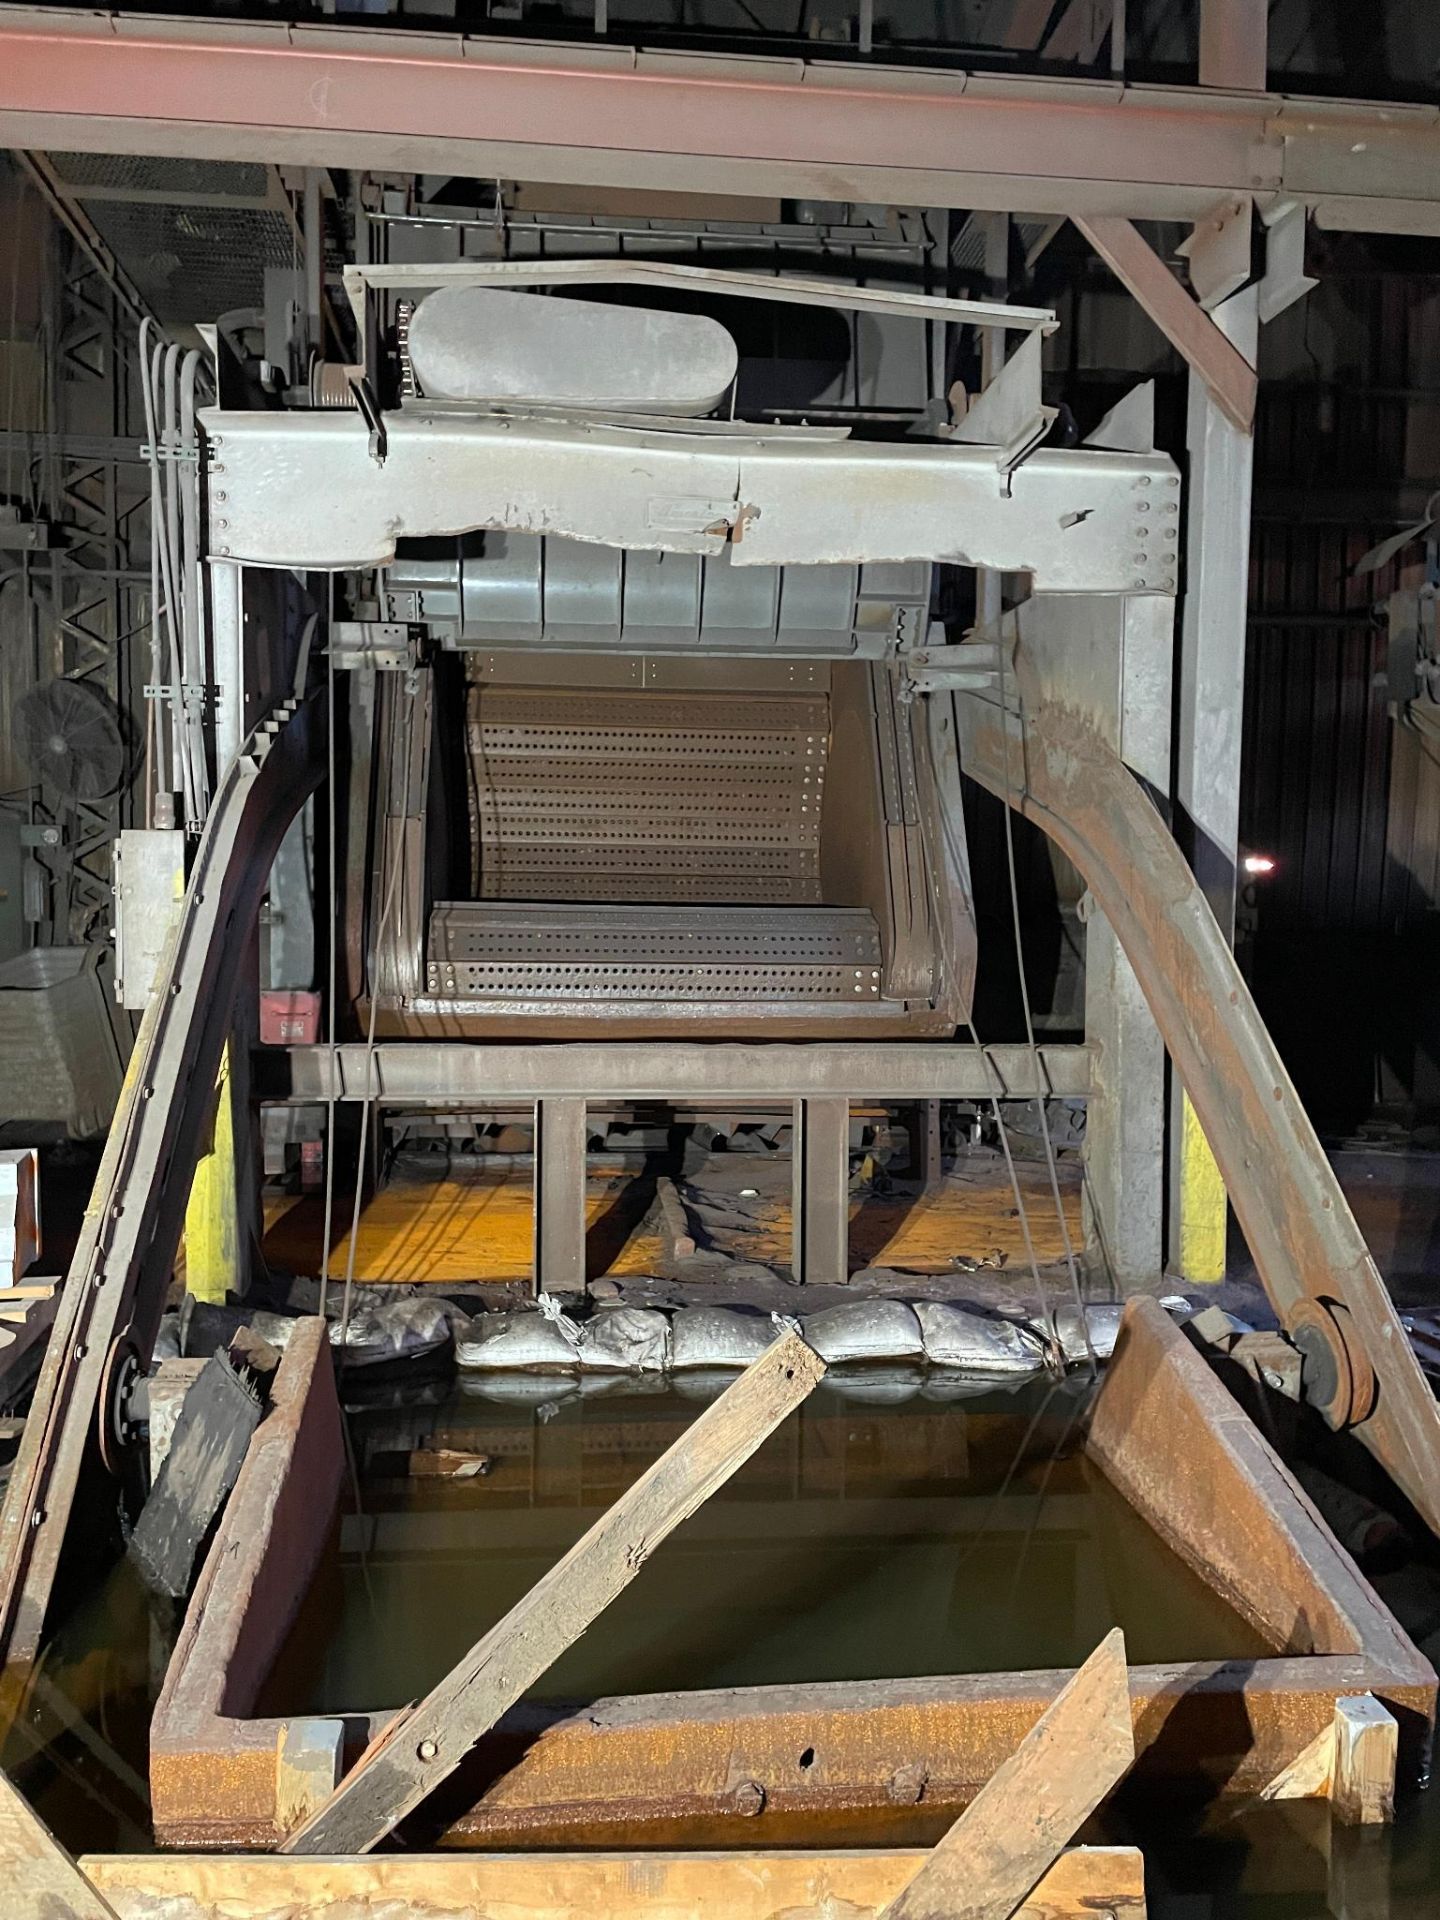 WHEELABRATOR SUPER 70 “TUMBLAST” SHOTBLASTING MACHINE, 63” x 96” opening size, skip loader unit, - Bild 2 aus 3